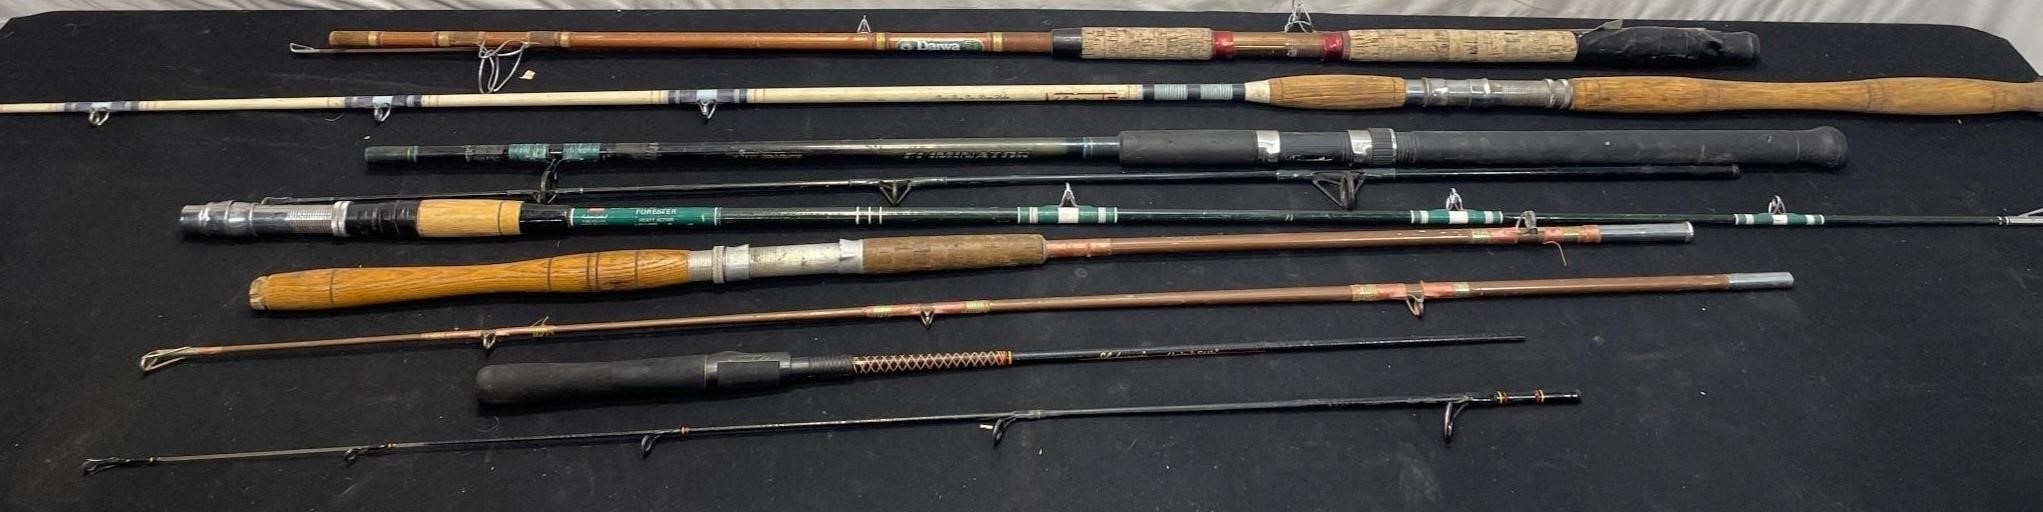 Fishing Rod Six Pack #2